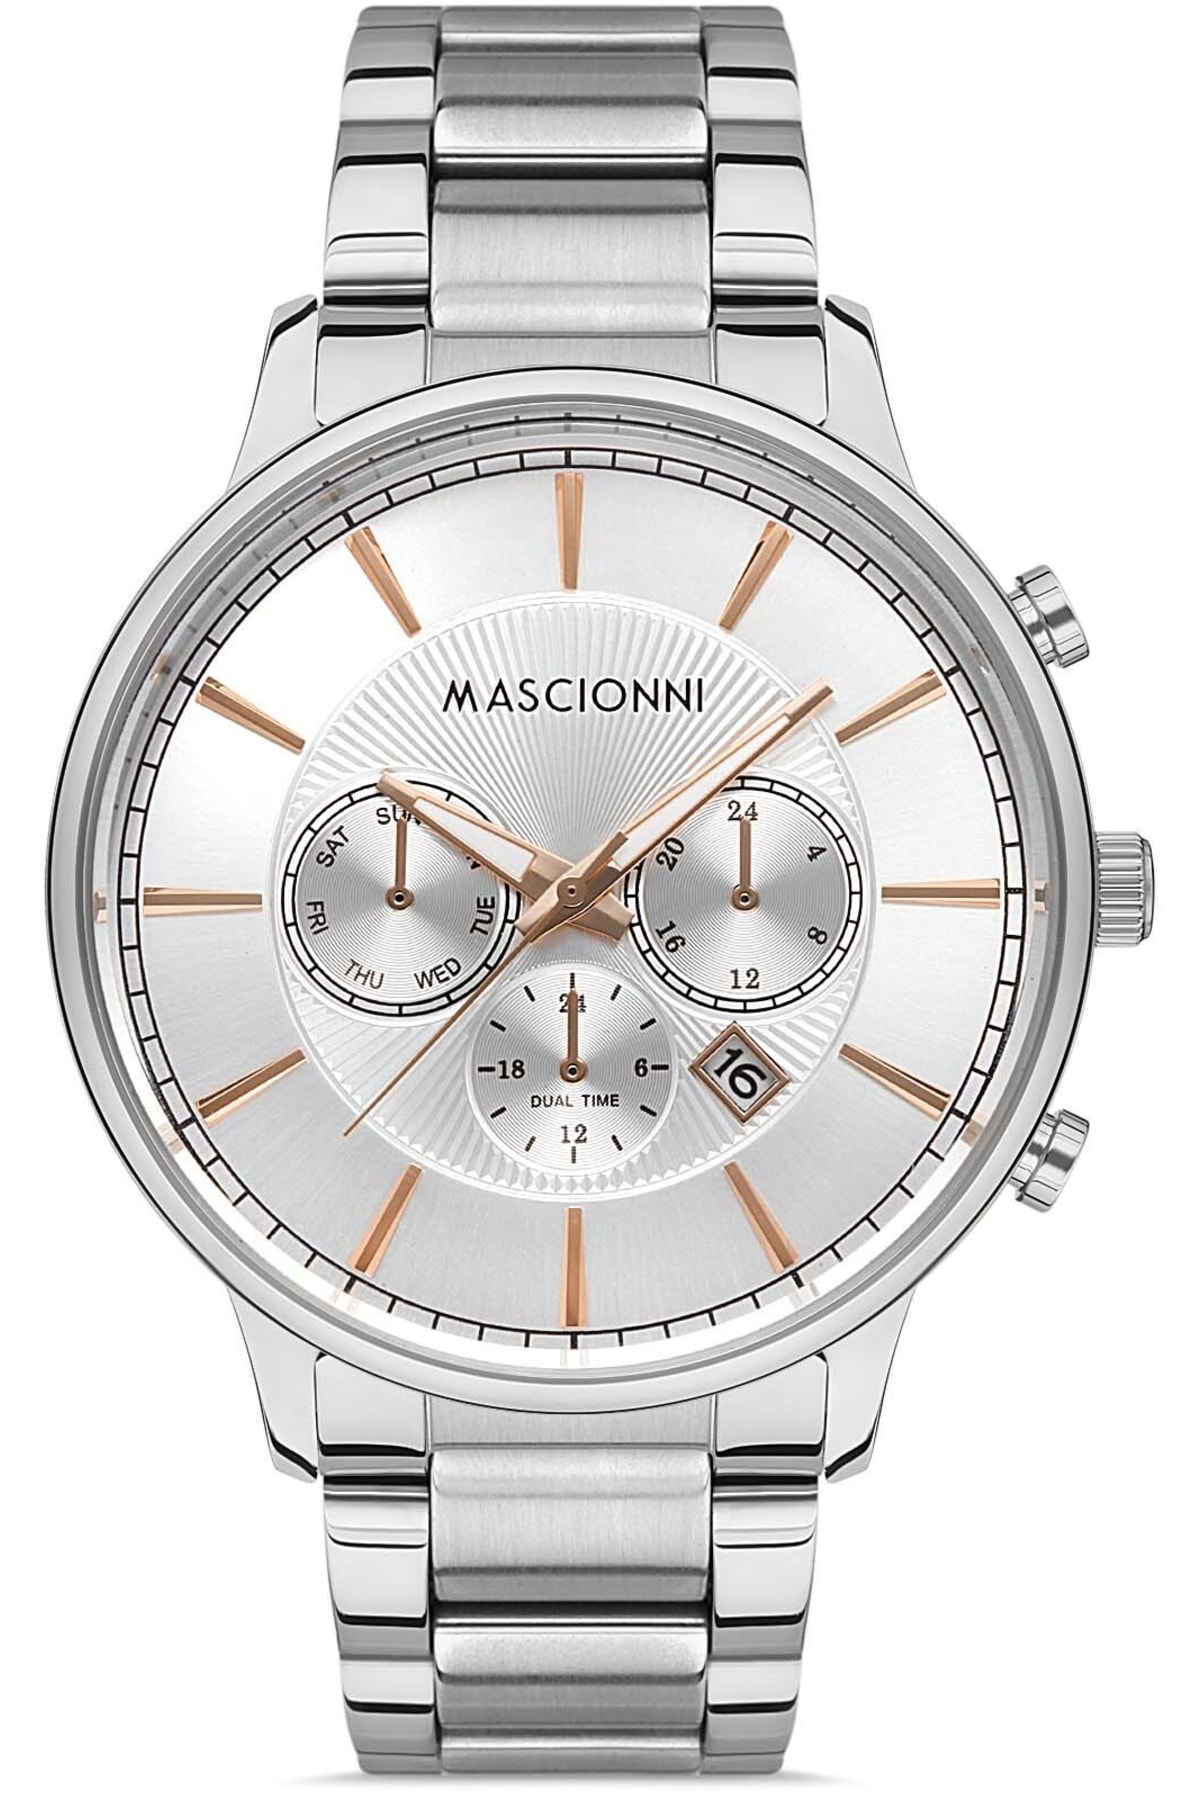 ساعت مردانه ماسیونی Mascionni با کد M.1.2002A.01